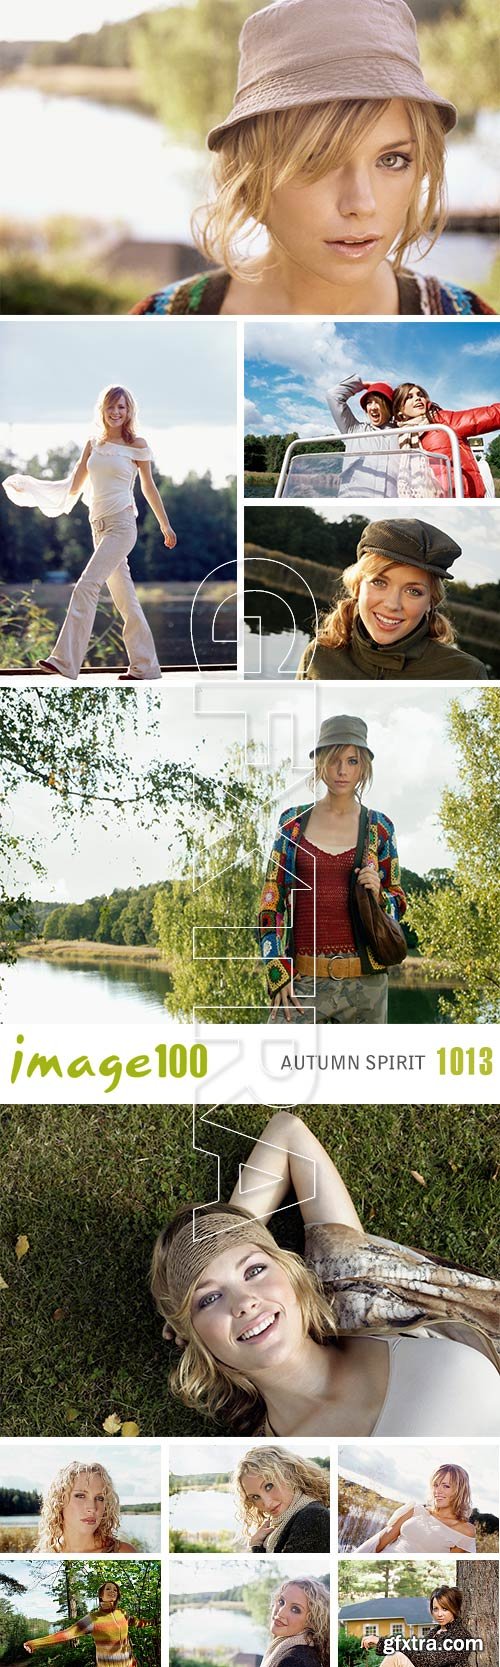 Image100 Vol.1013 Autumn Spirit